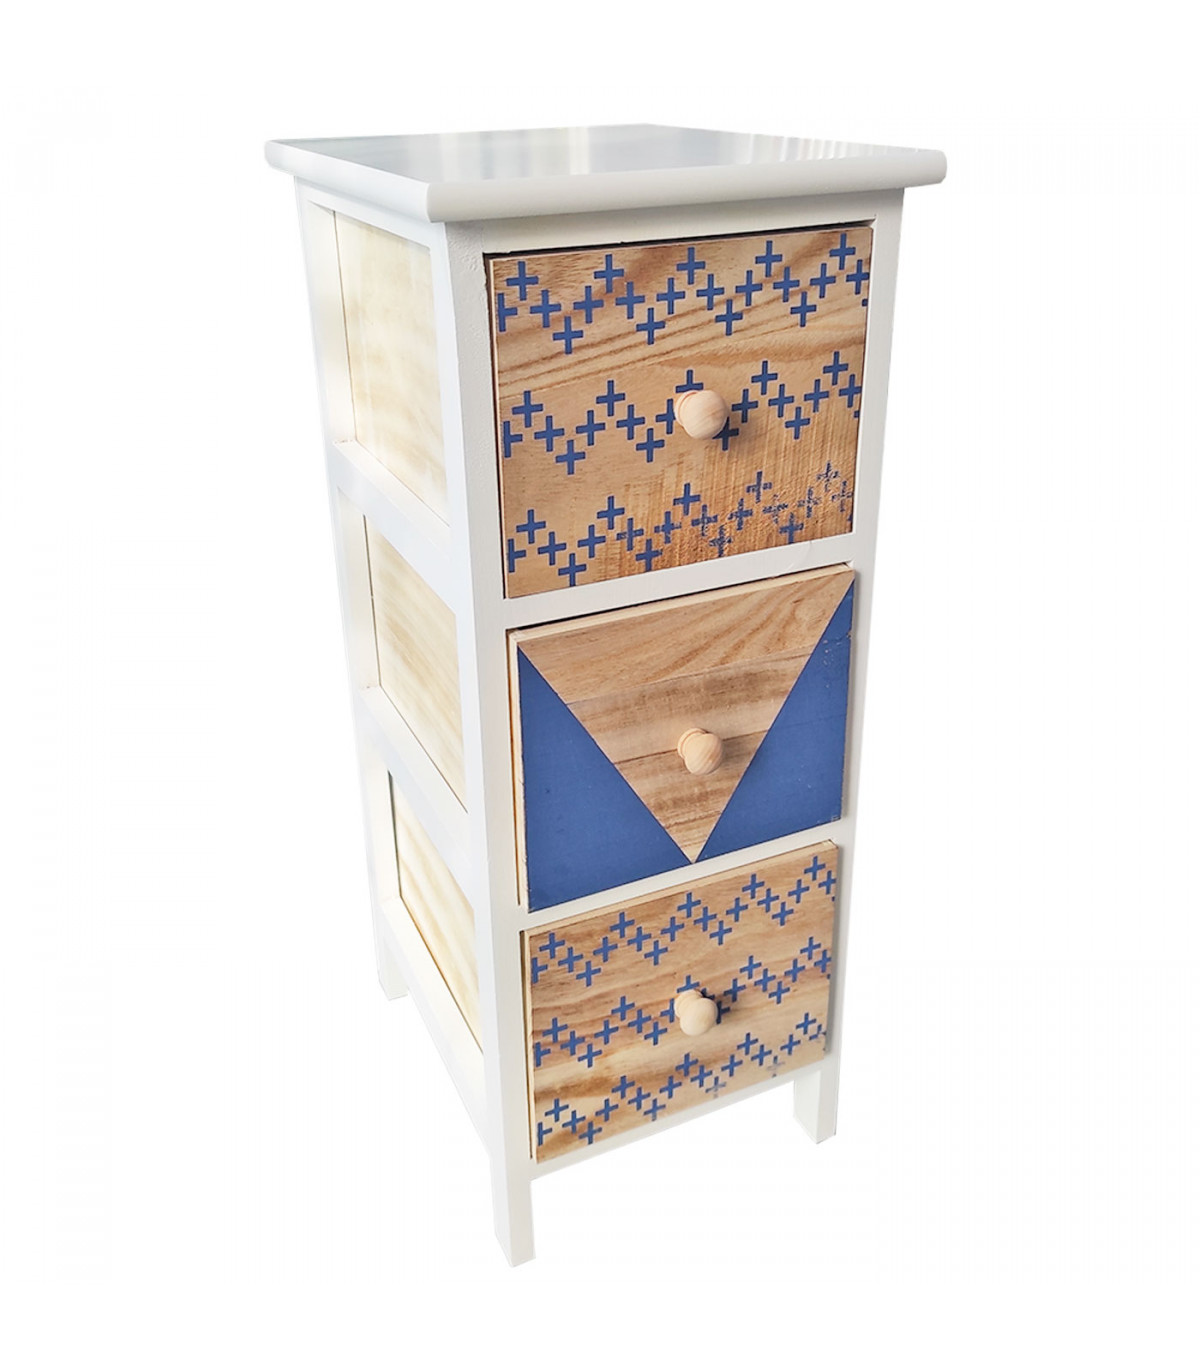 Cajonera blanca de madera, 3 cajones, 62,5 x 26 x 32 cm, diseño con cruces  azules, torre de ordenación, mueble auxiliar almacena